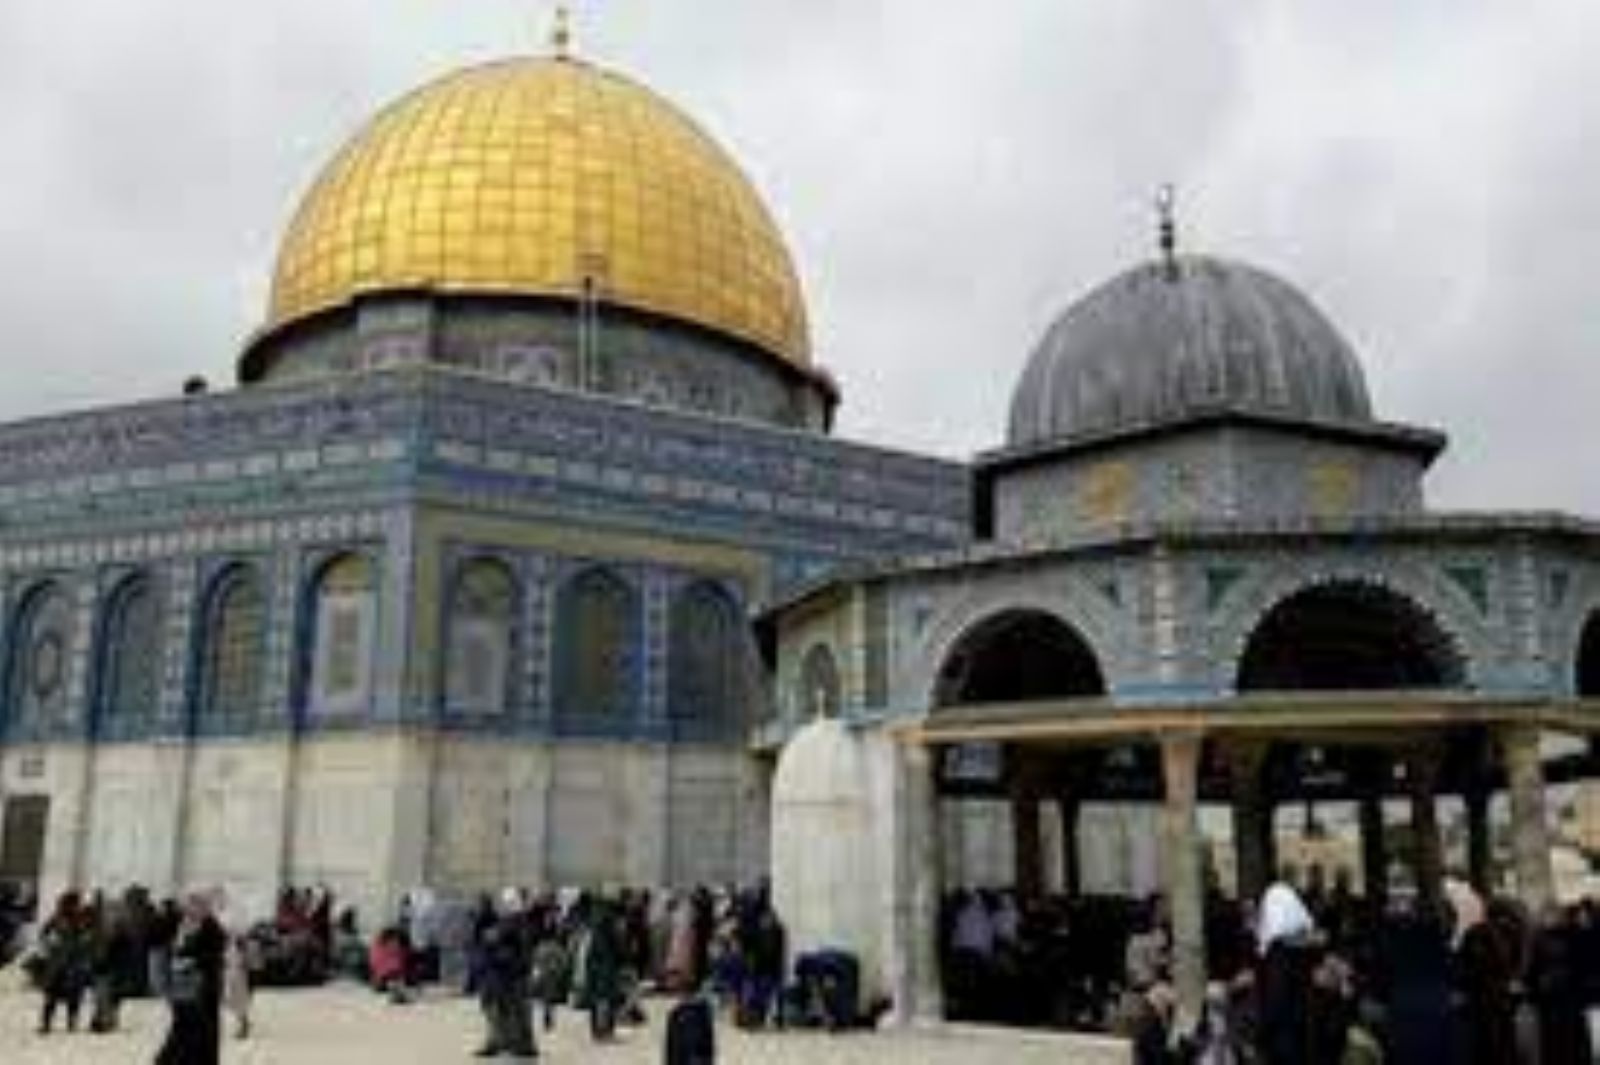 حظر وحل "لجنة الزكاة المركزية" في القدس